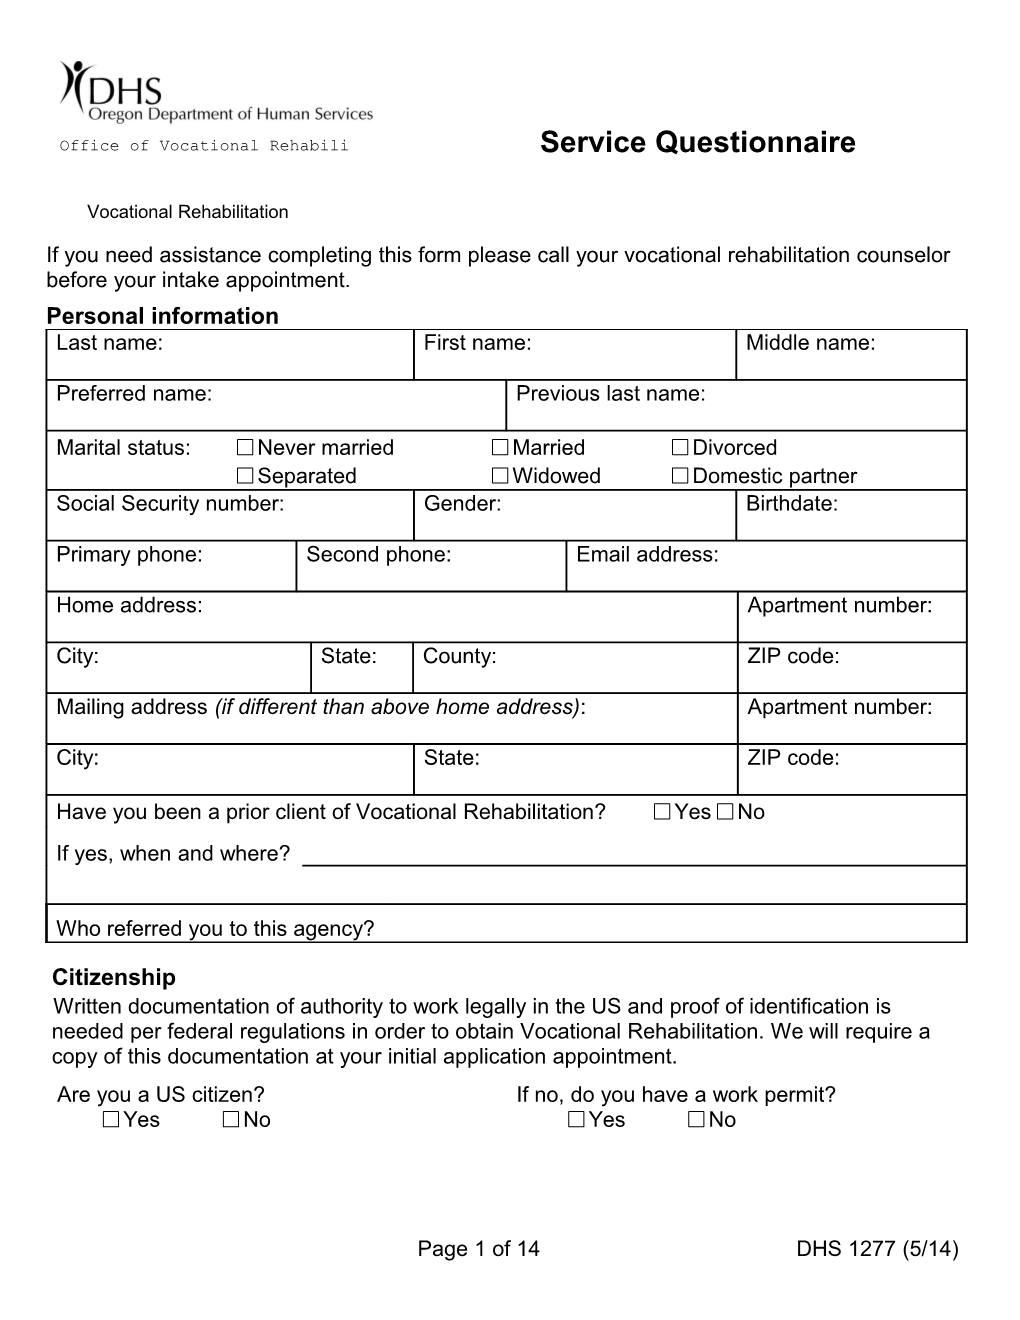 Service Questionnaire (Vocational Rehabilitation Services)